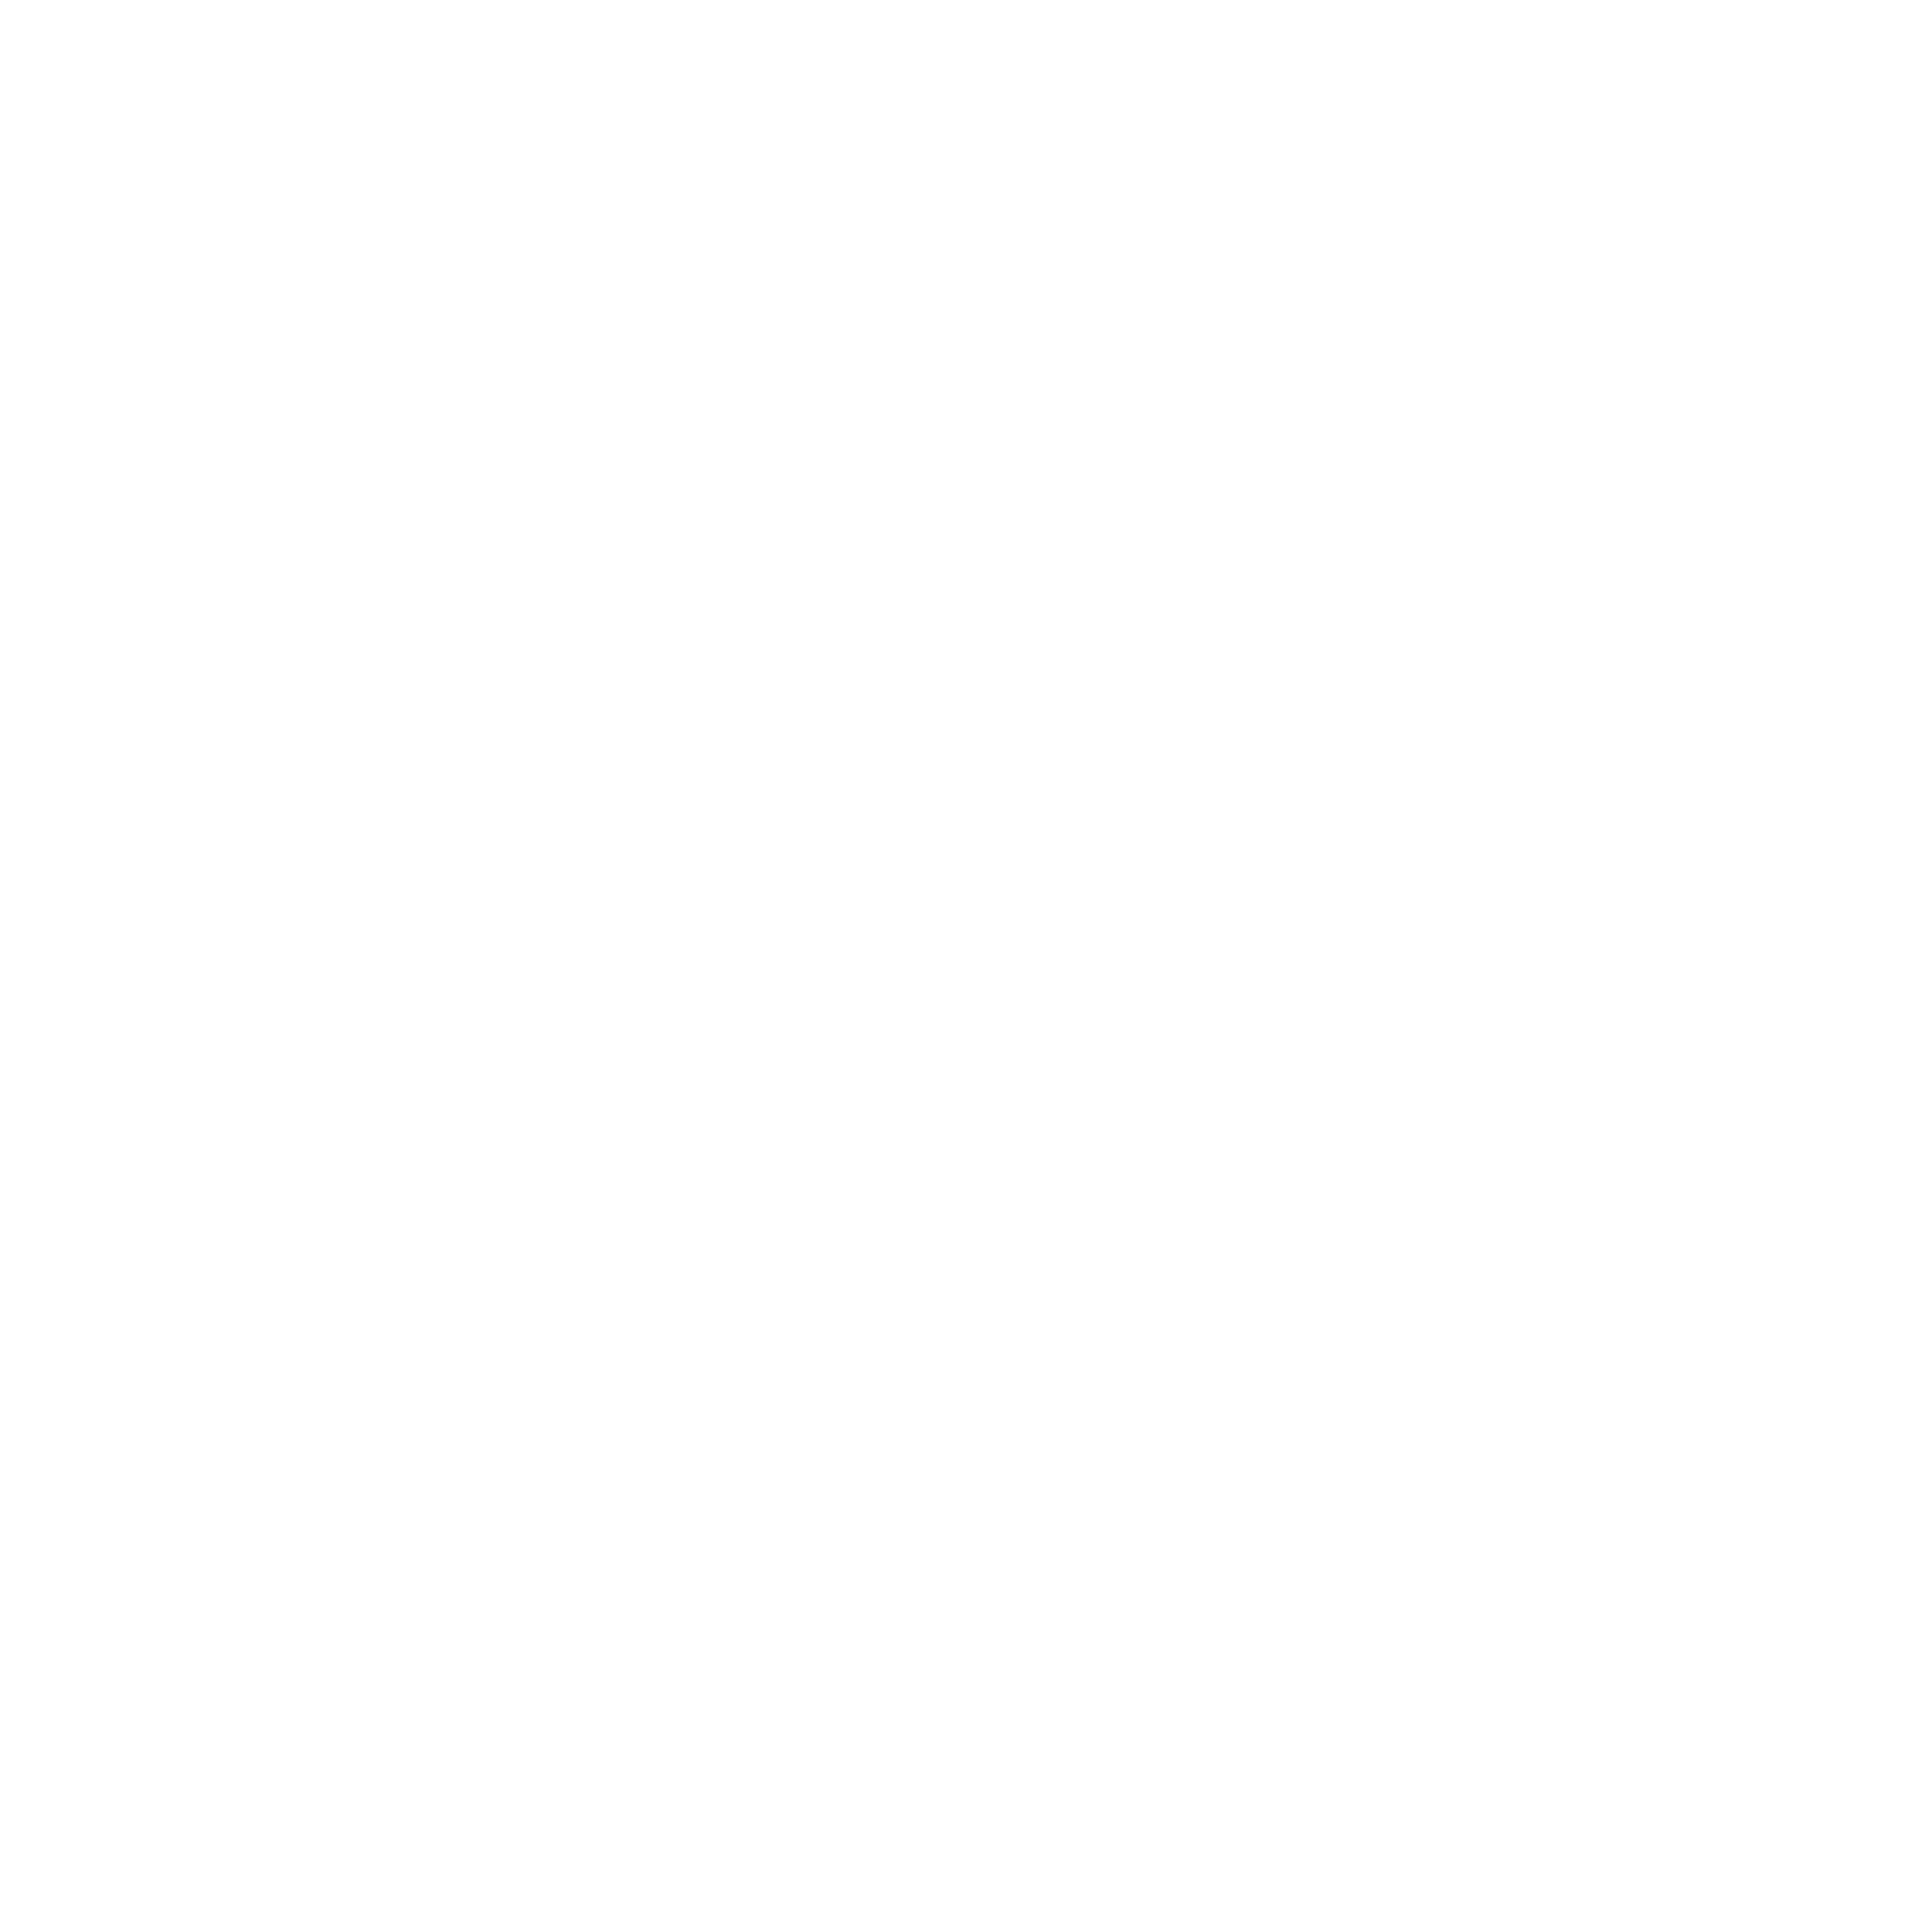 bernhardkaempf.ch